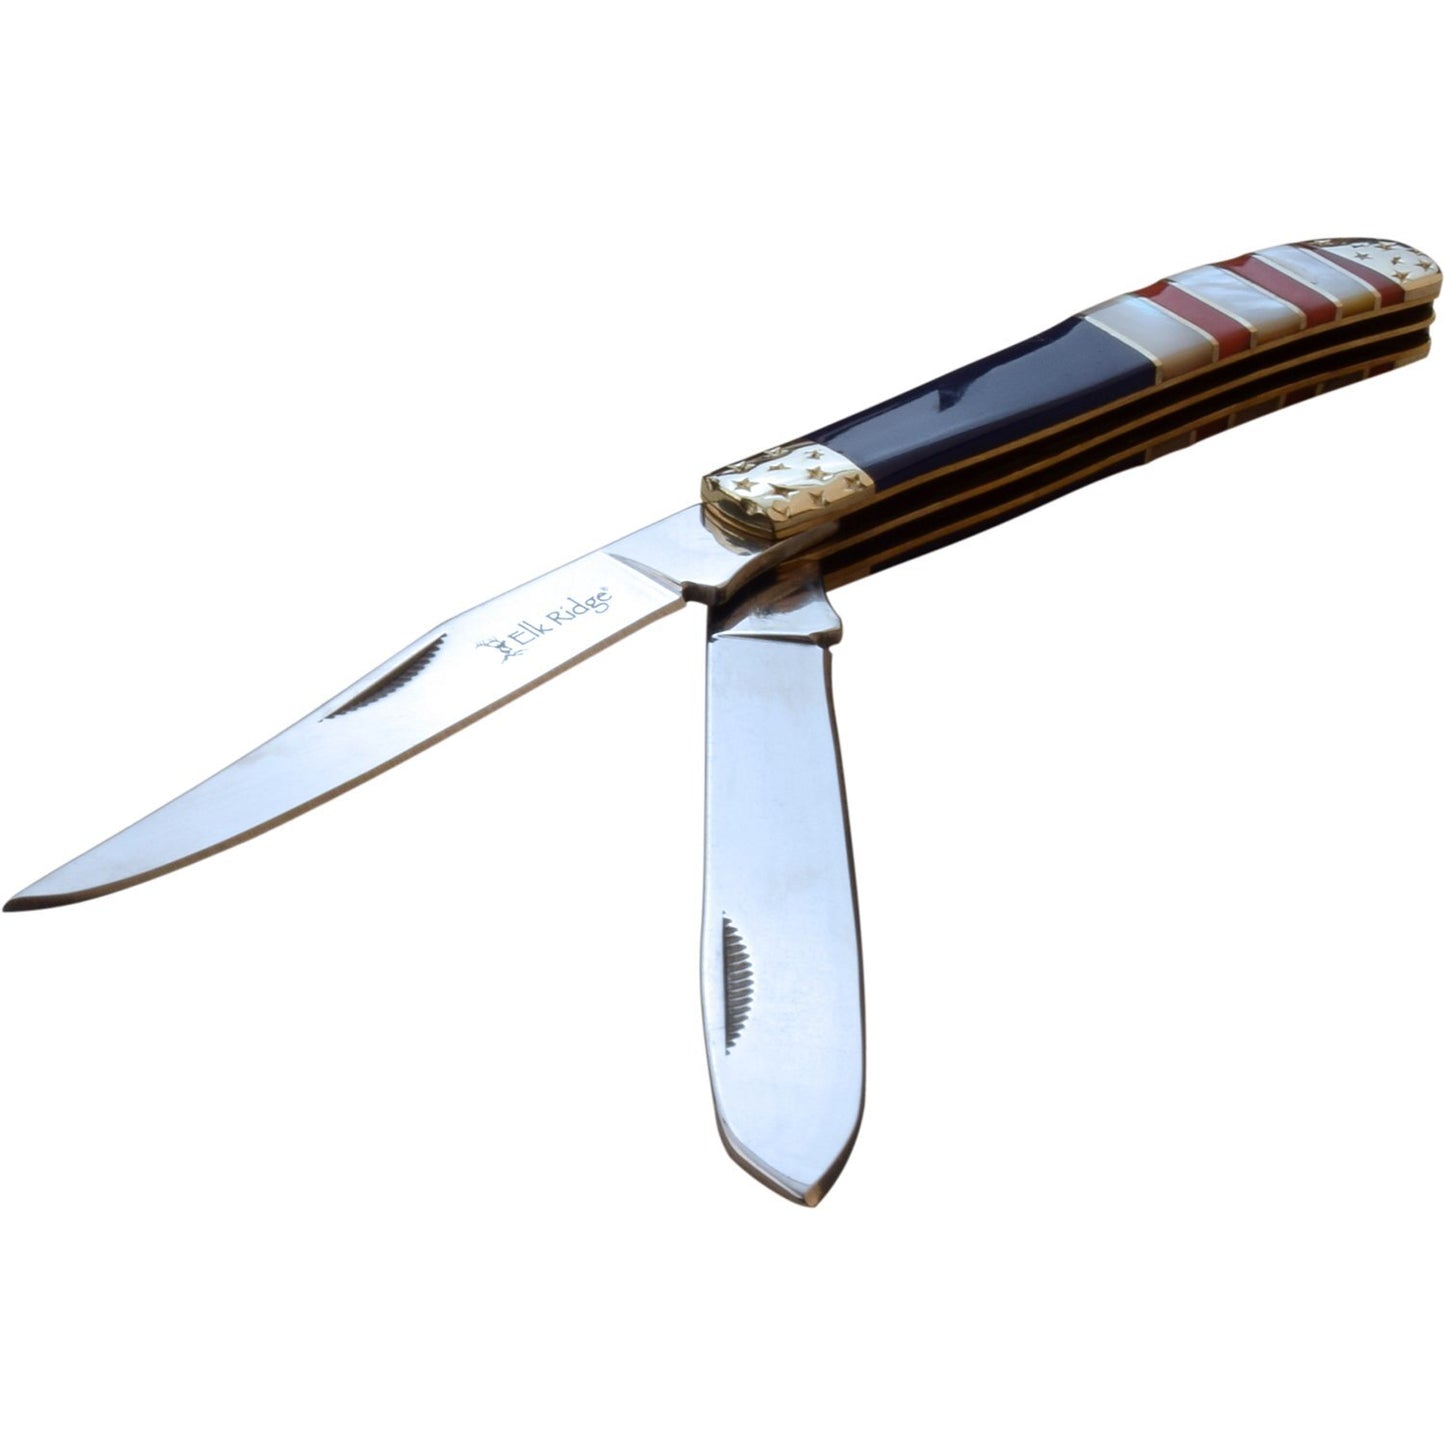 Elk Ridge Elk Ridge Trapper Fine Edge Blade Pocket Knife - 2 Blades Stone Acrylic Handle #er-954Af Lavender